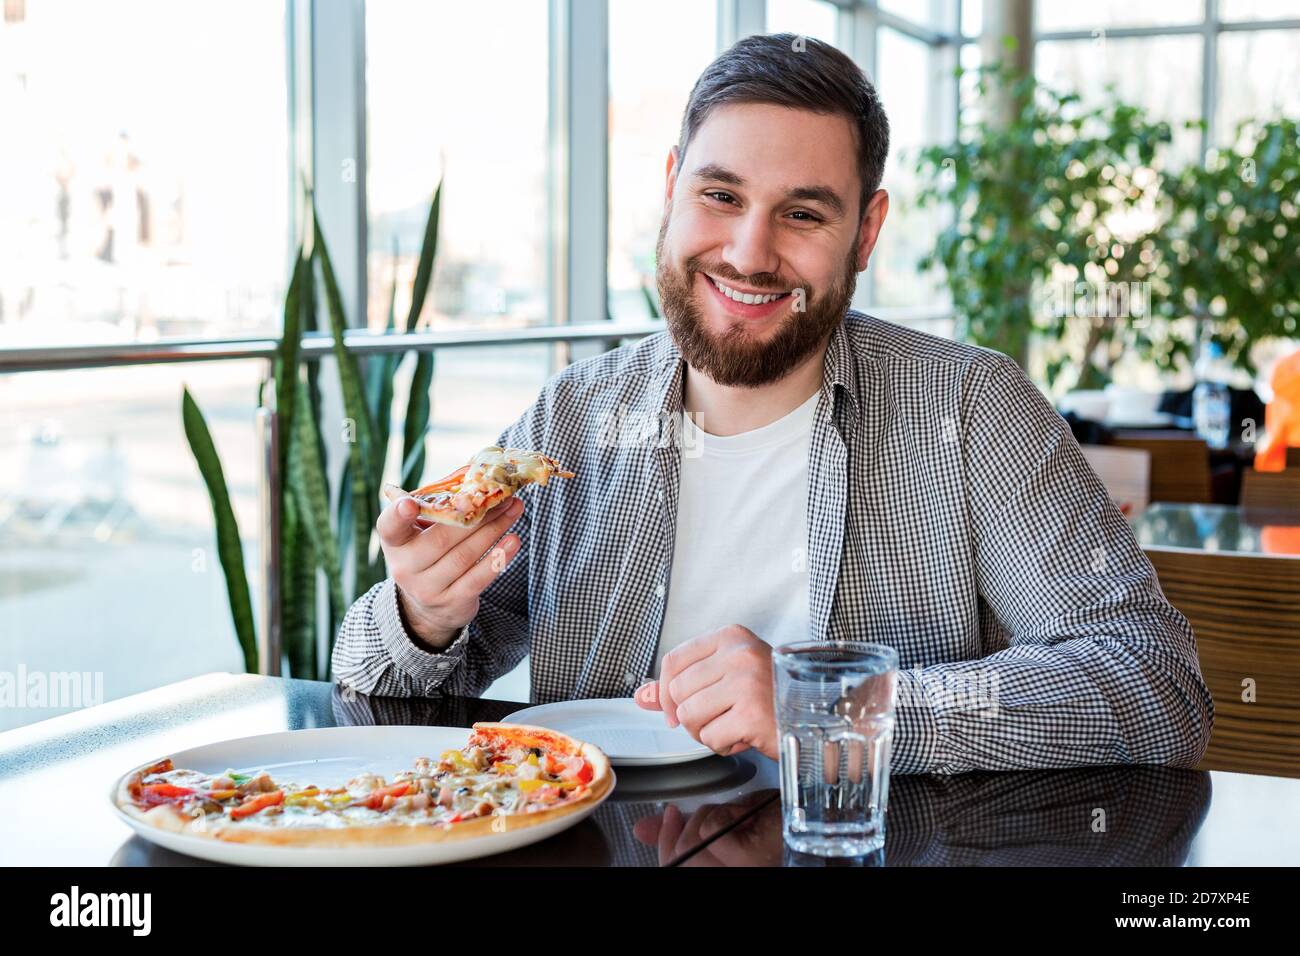 Porträt glücklich lächelnd kaukasischen Mann essen italienische Pizza in der Pizzeria hält soziale Distanz. Leckere Pizza im Café. Stockfoto